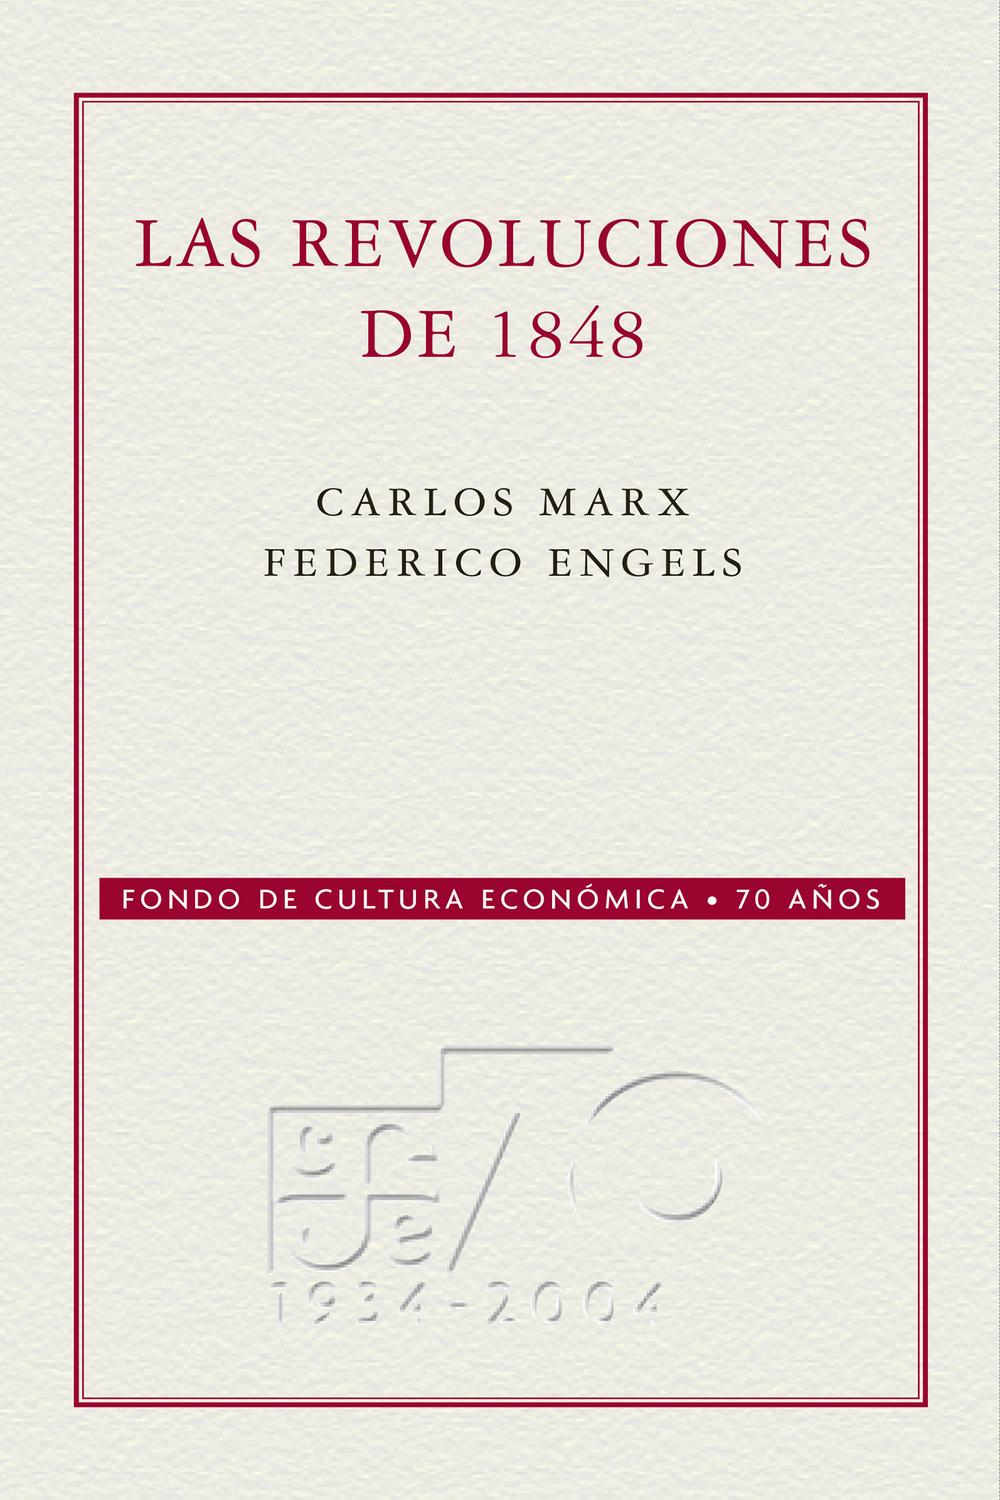 Las Revoluciones de 1848 - Carlos Marx, Federico Engels, Wenceslao Roces